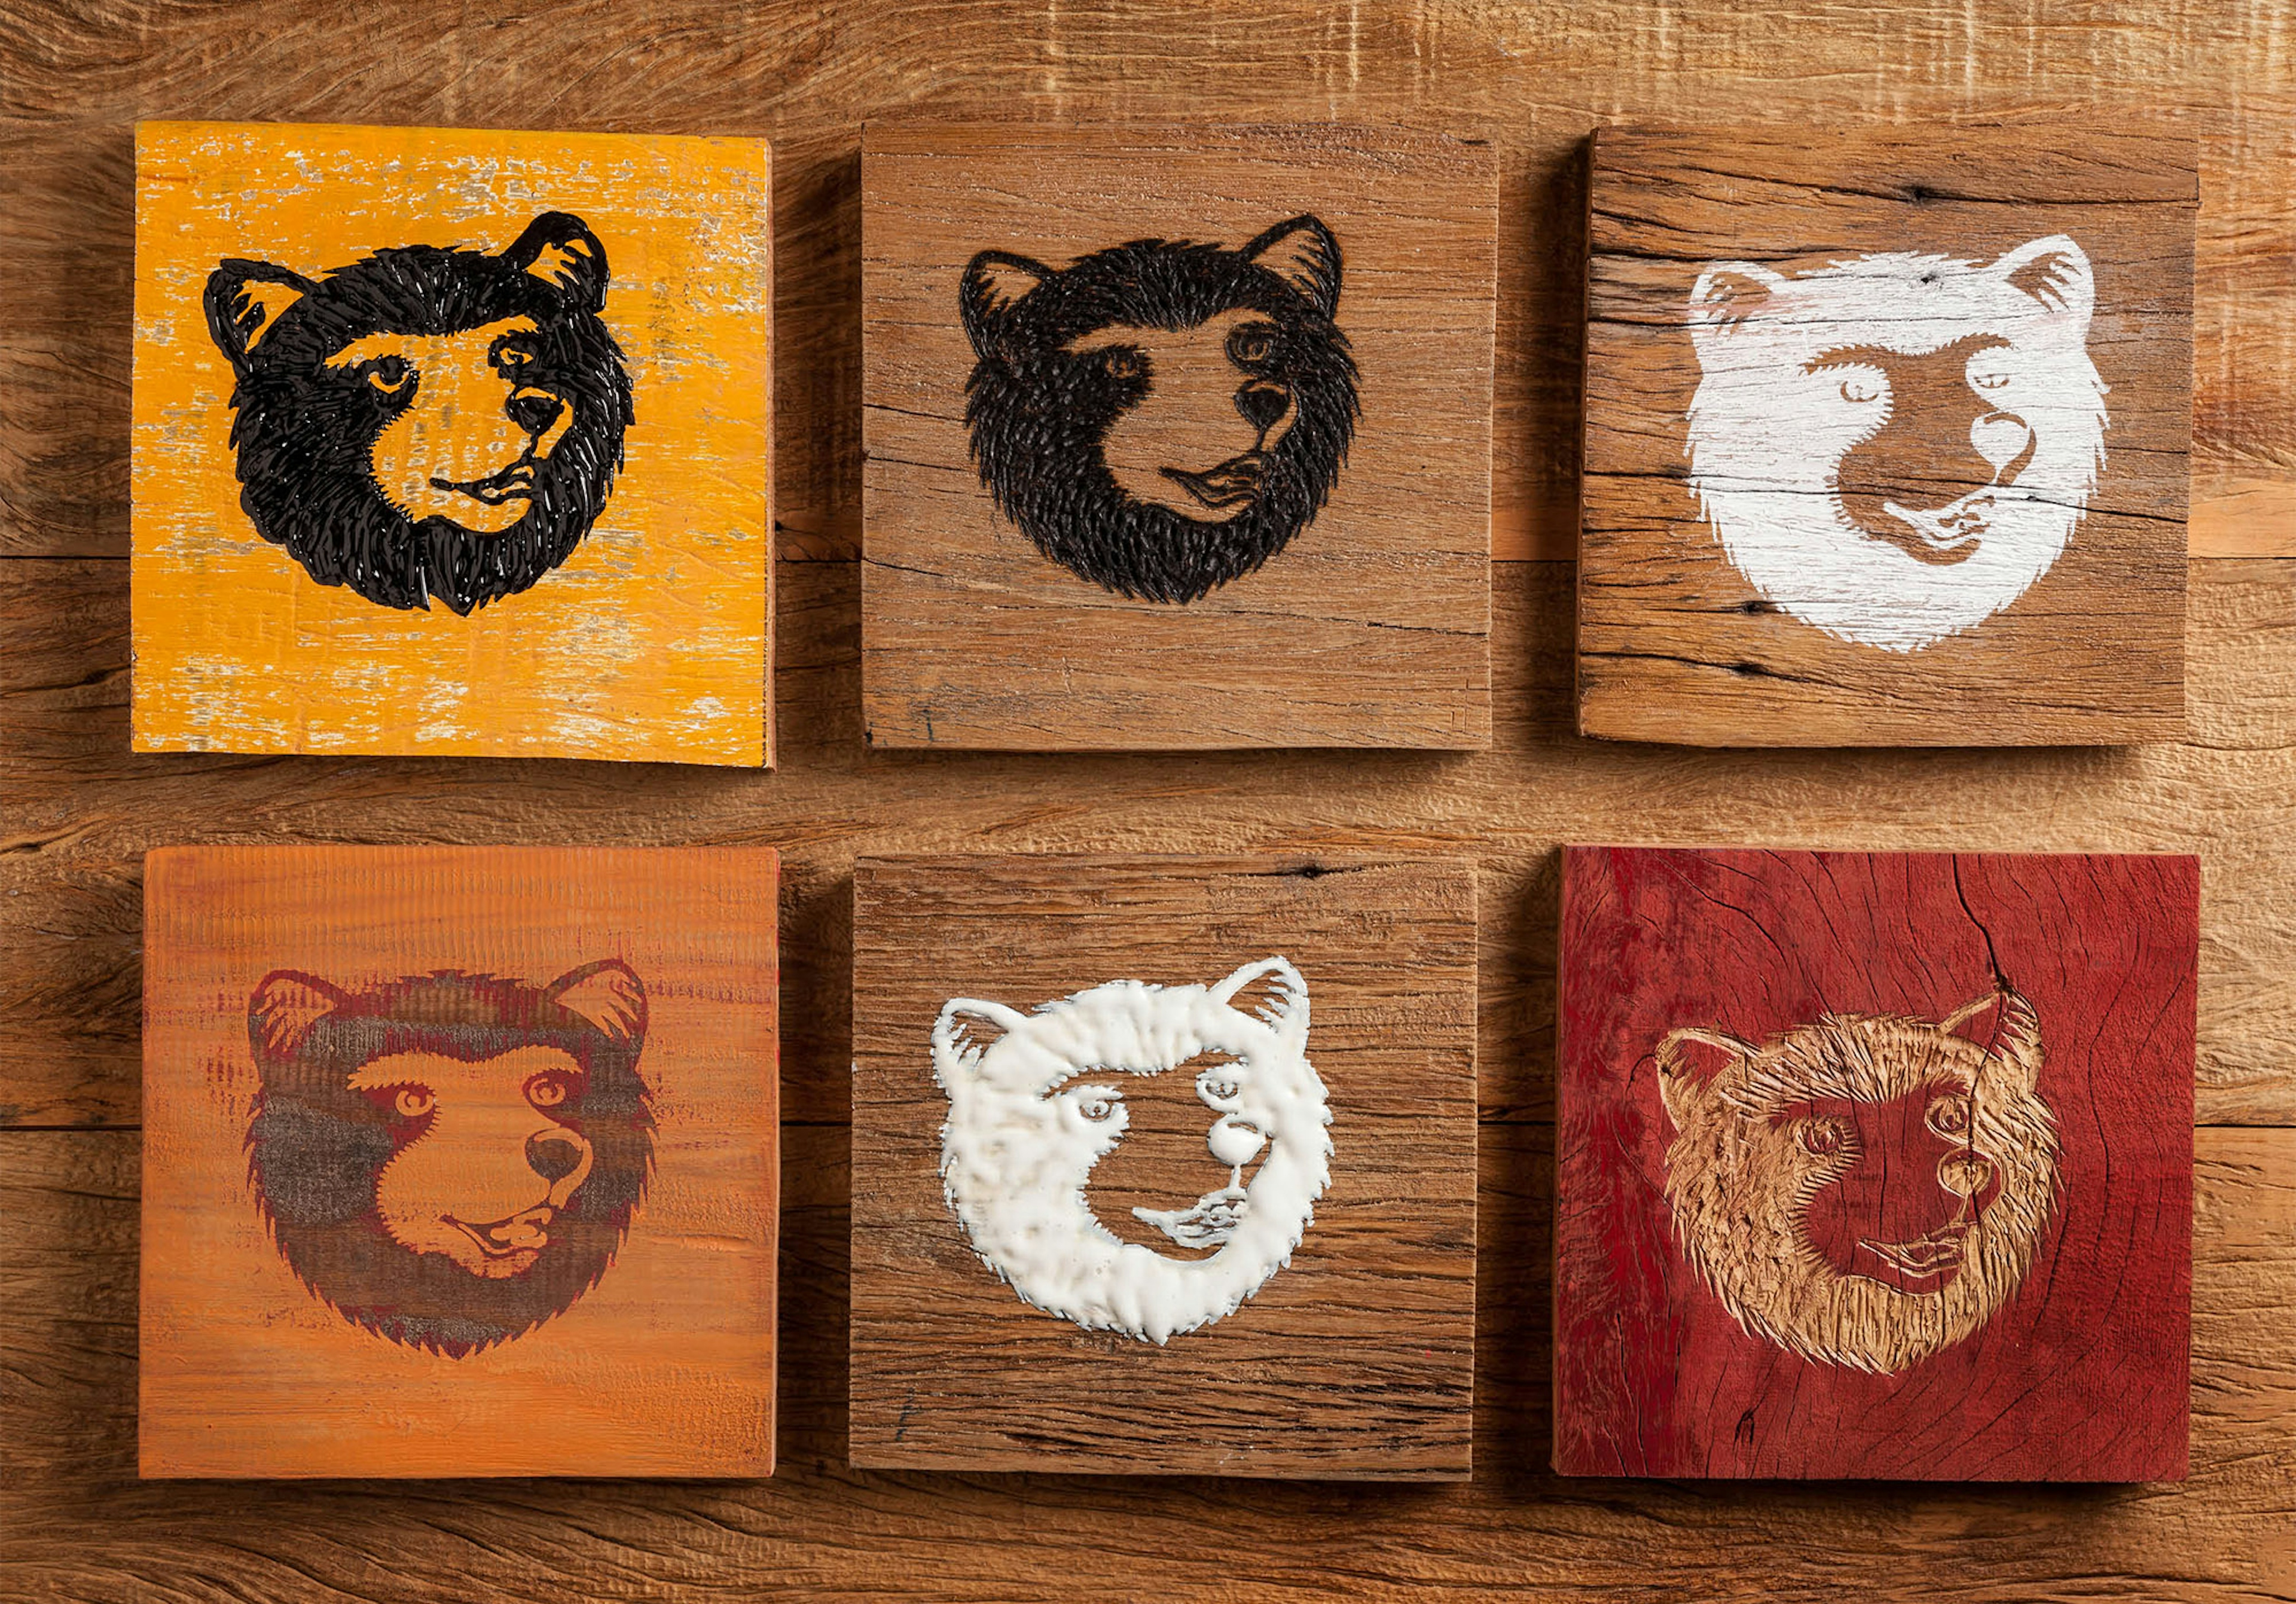 Urso da cervejaria Colorado feito de madeira com xilogravura